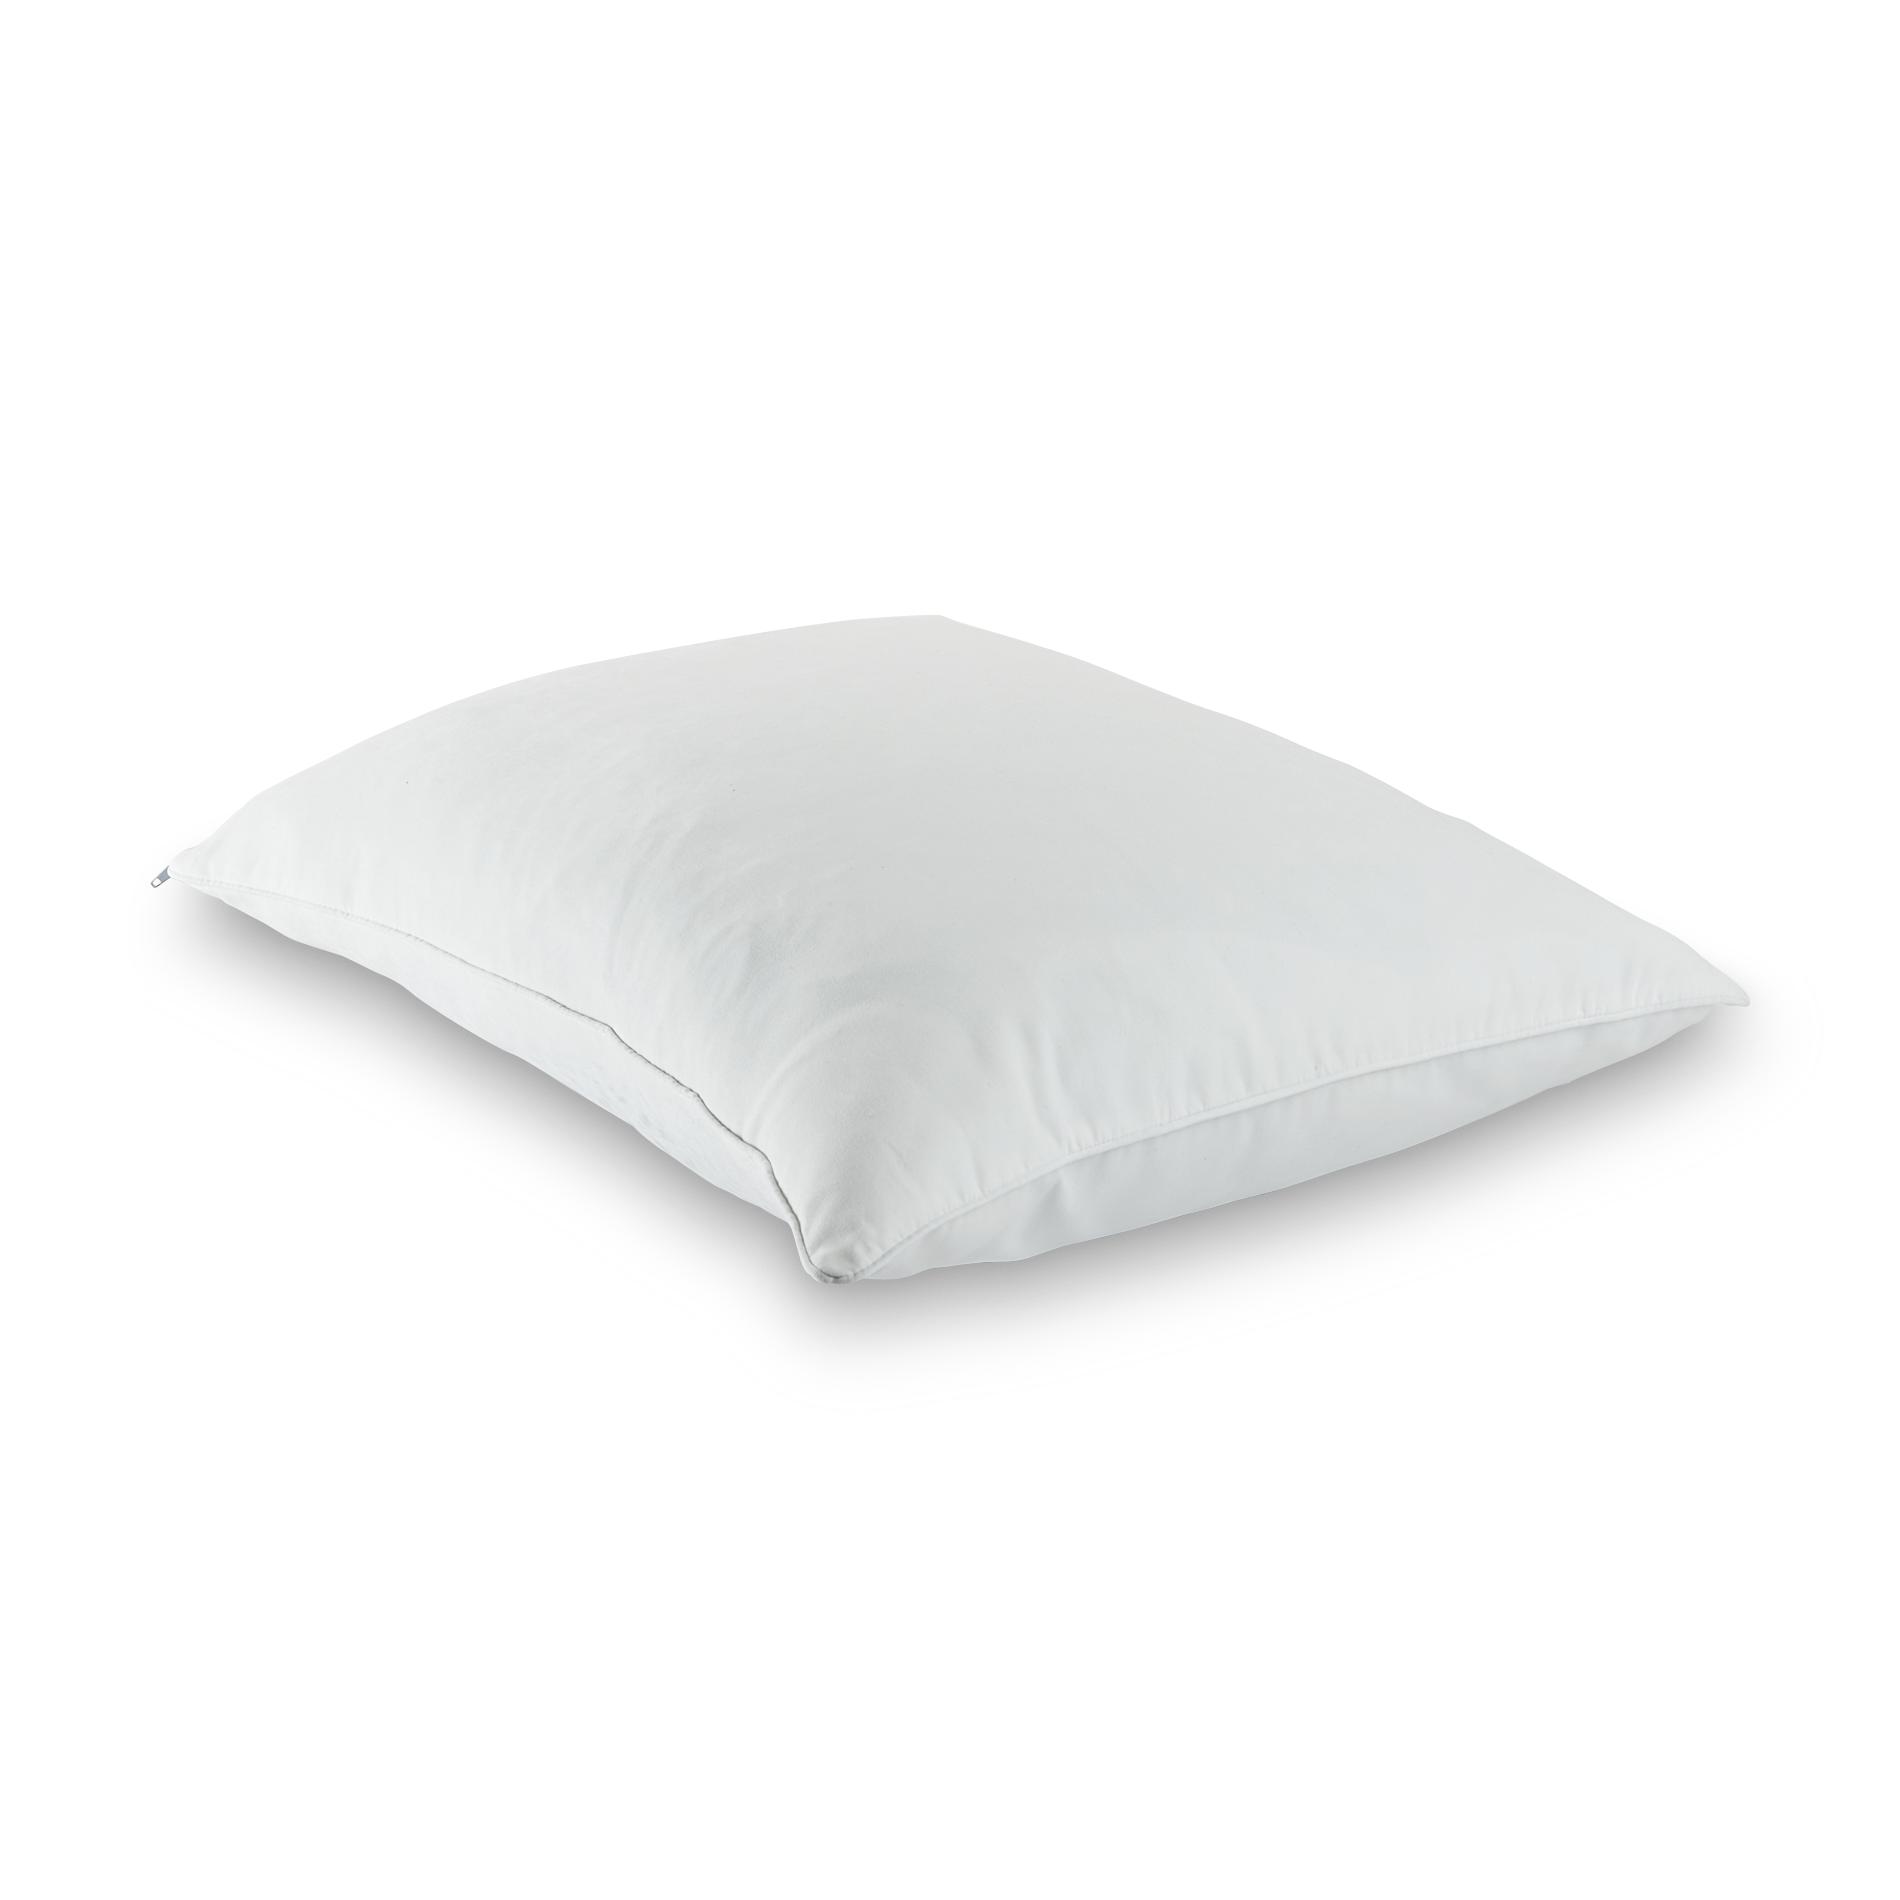 kmart memory foam pillow review